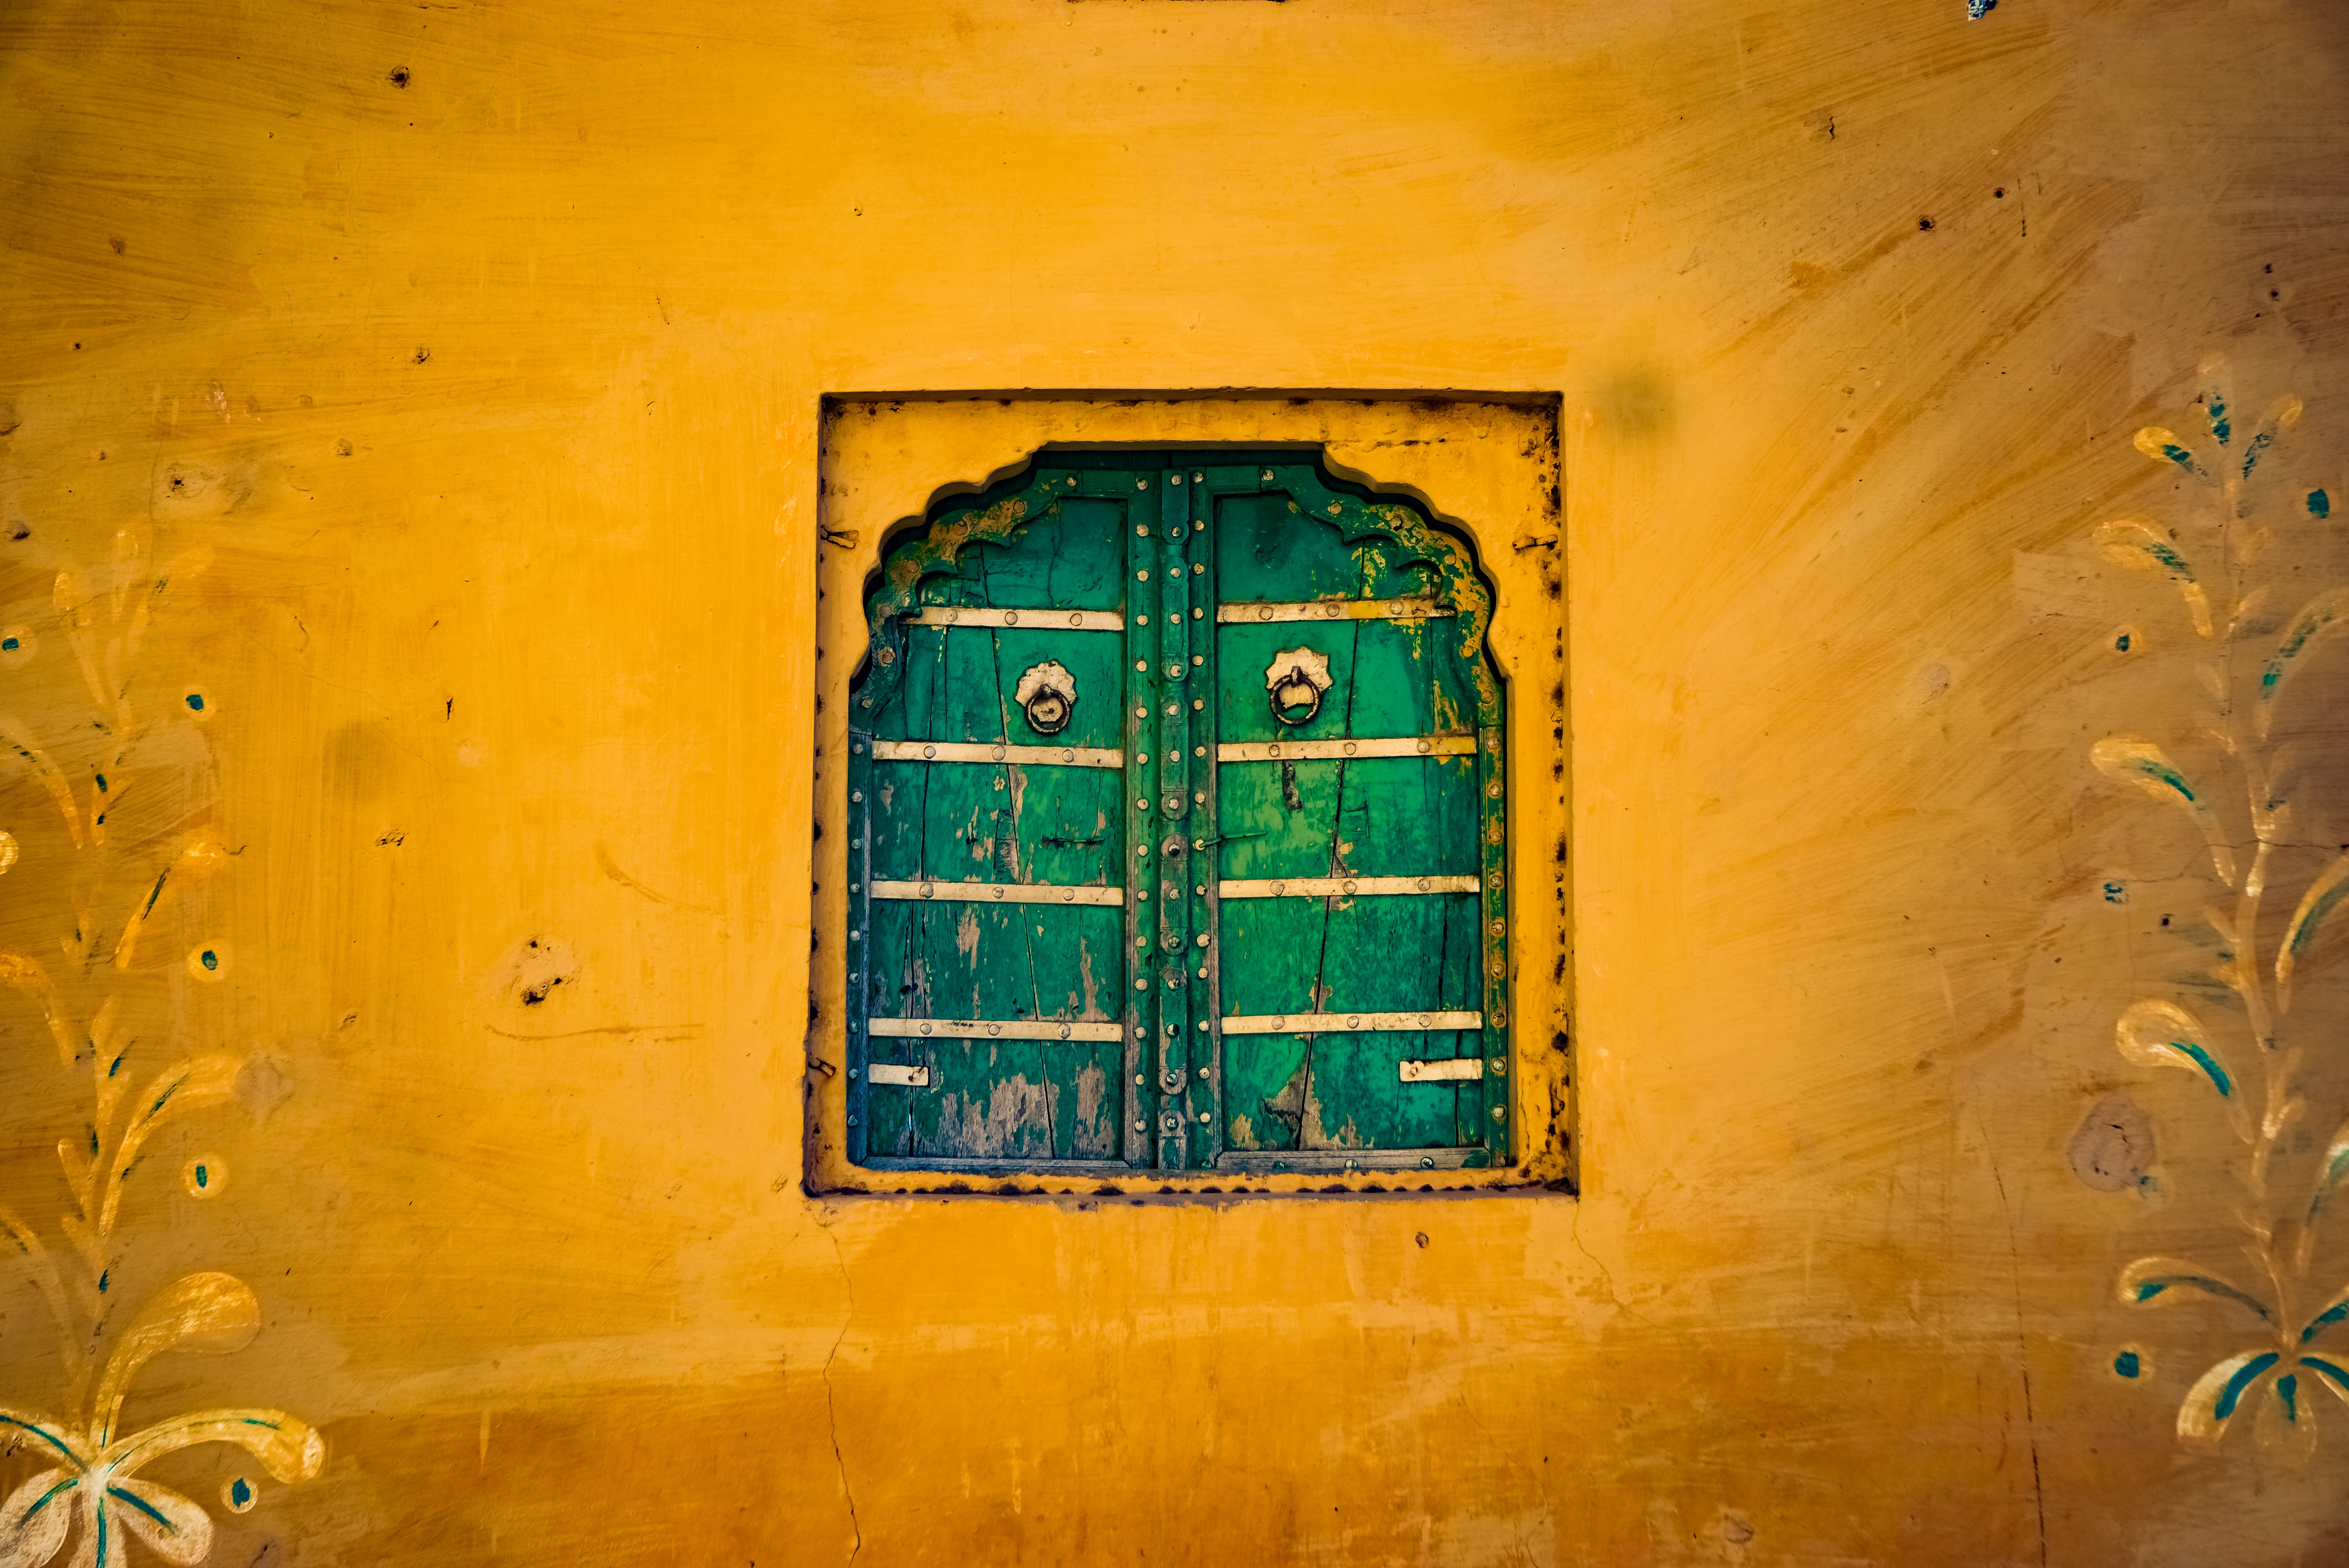 rajput wallpapers for mobile phones,green,yellow,wall,door,wood